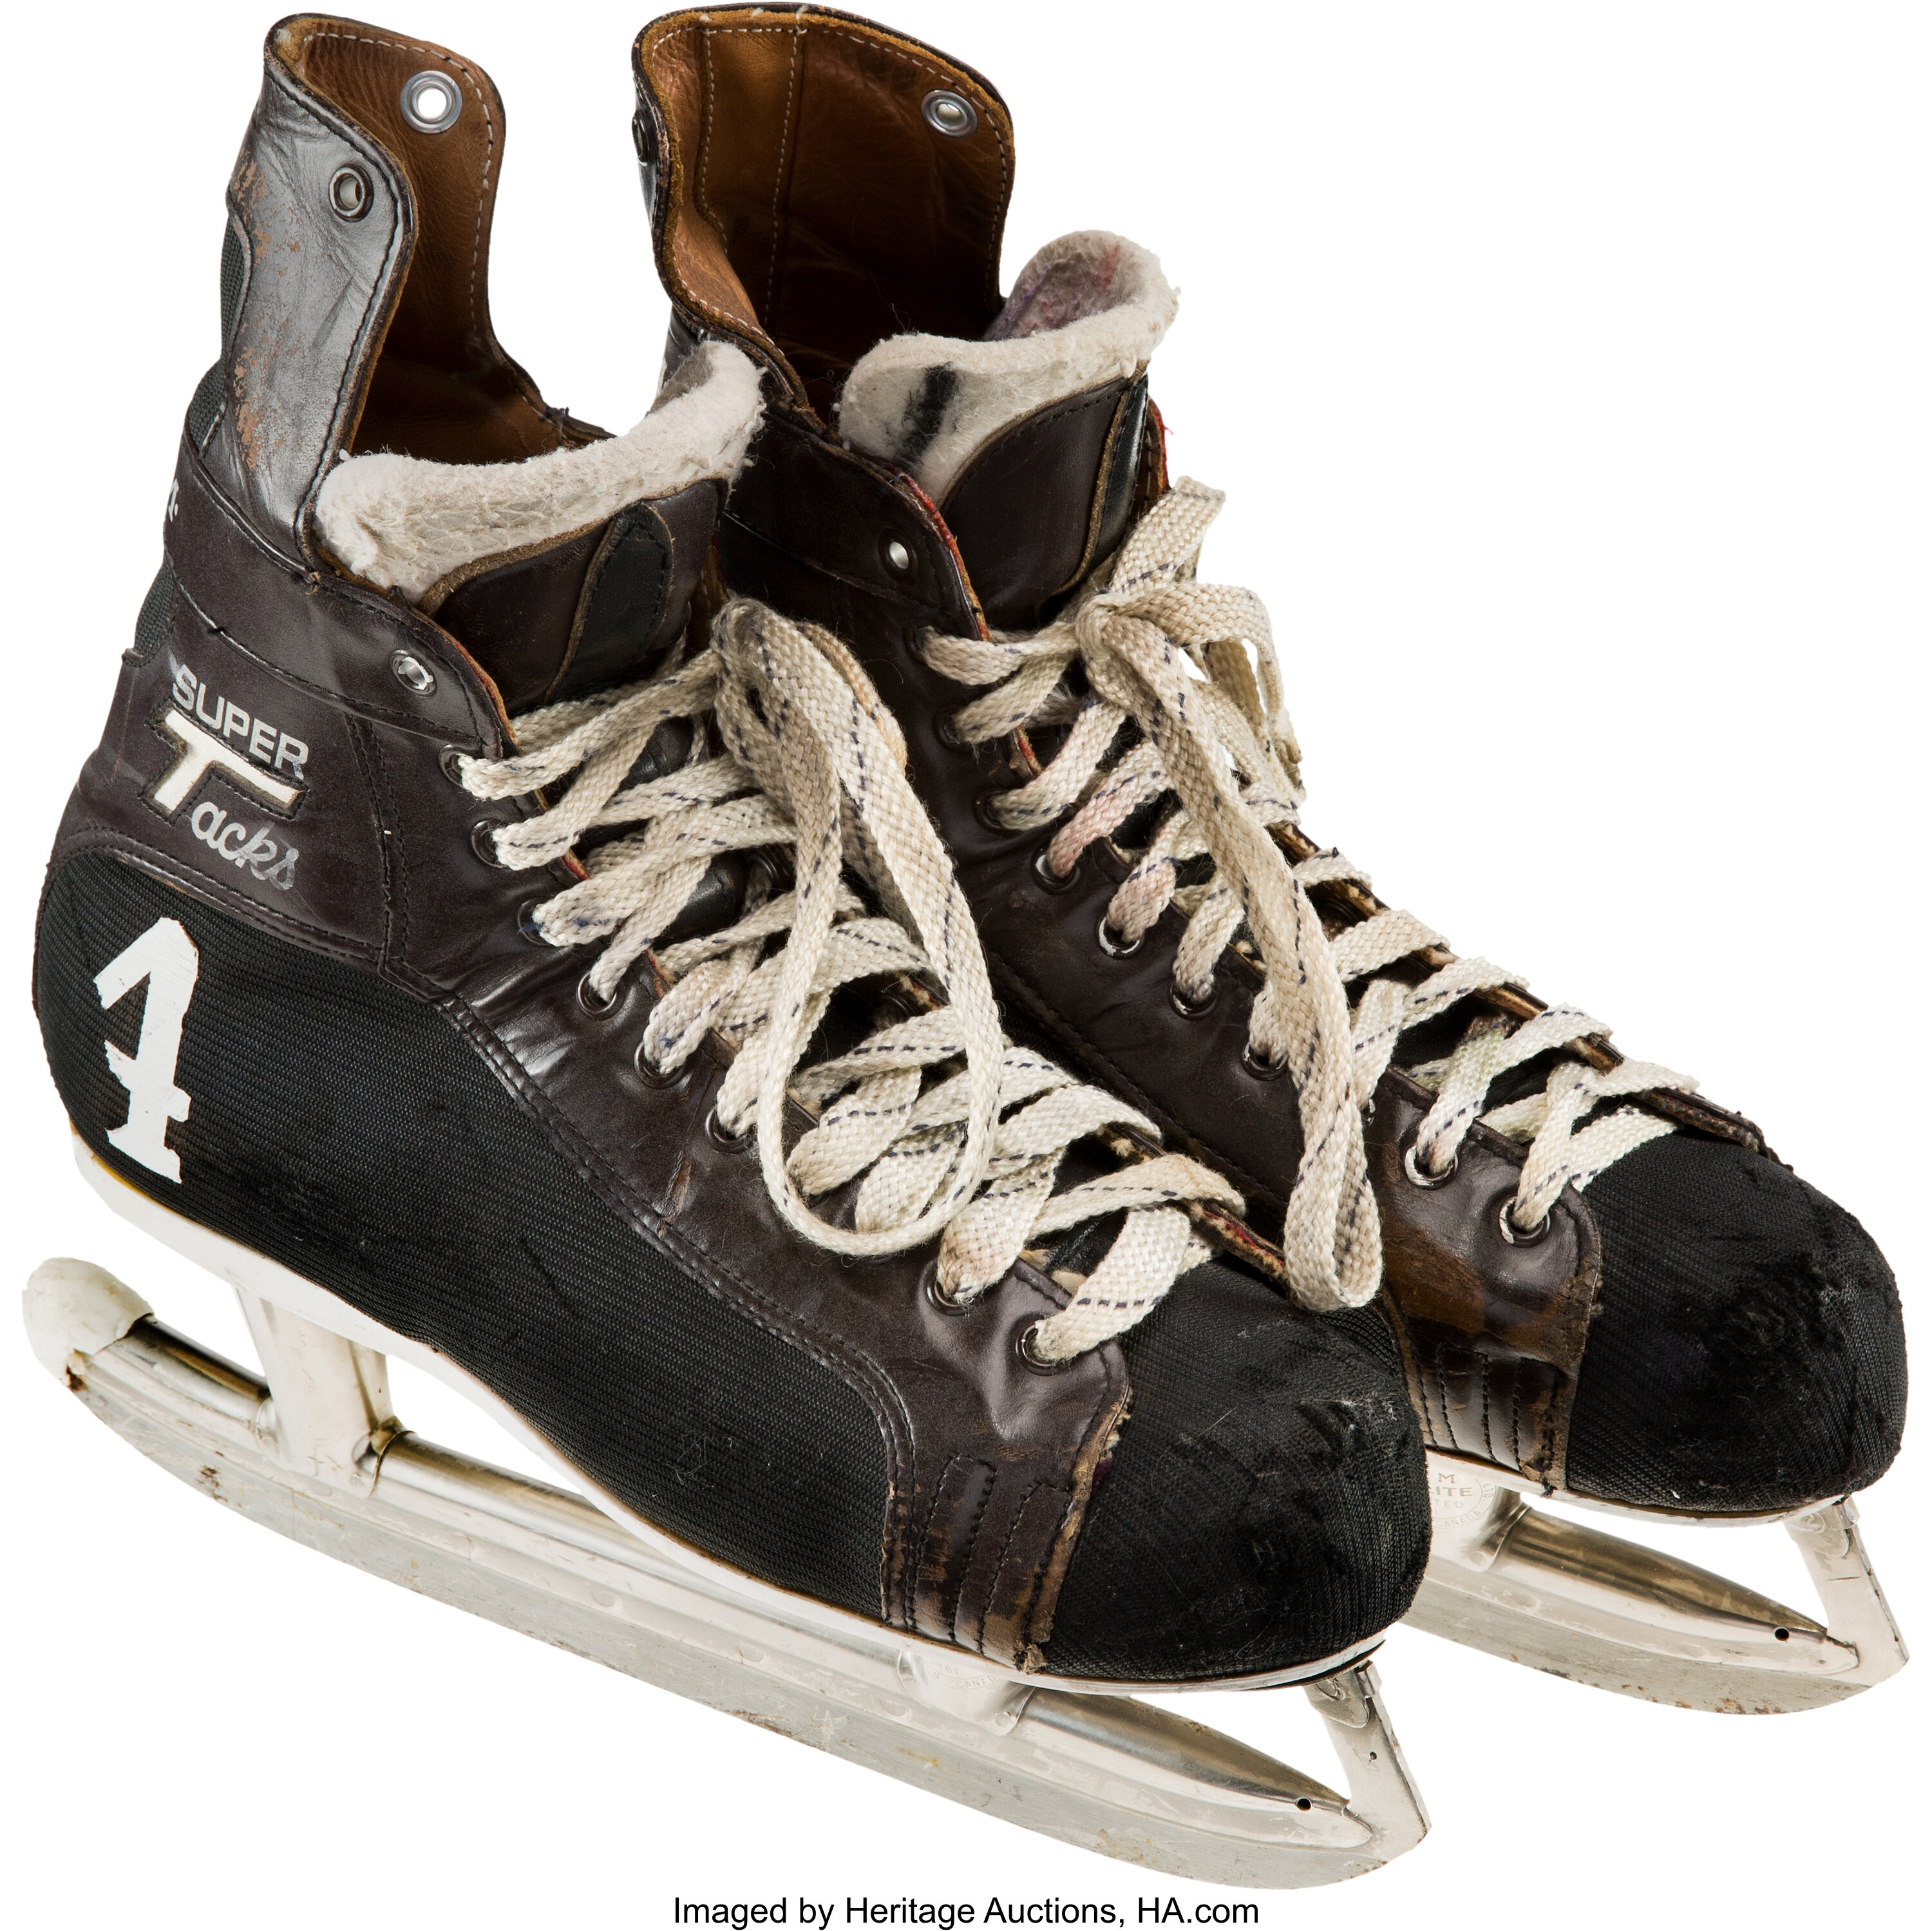 Boston Bruins NHL Slipper Skates